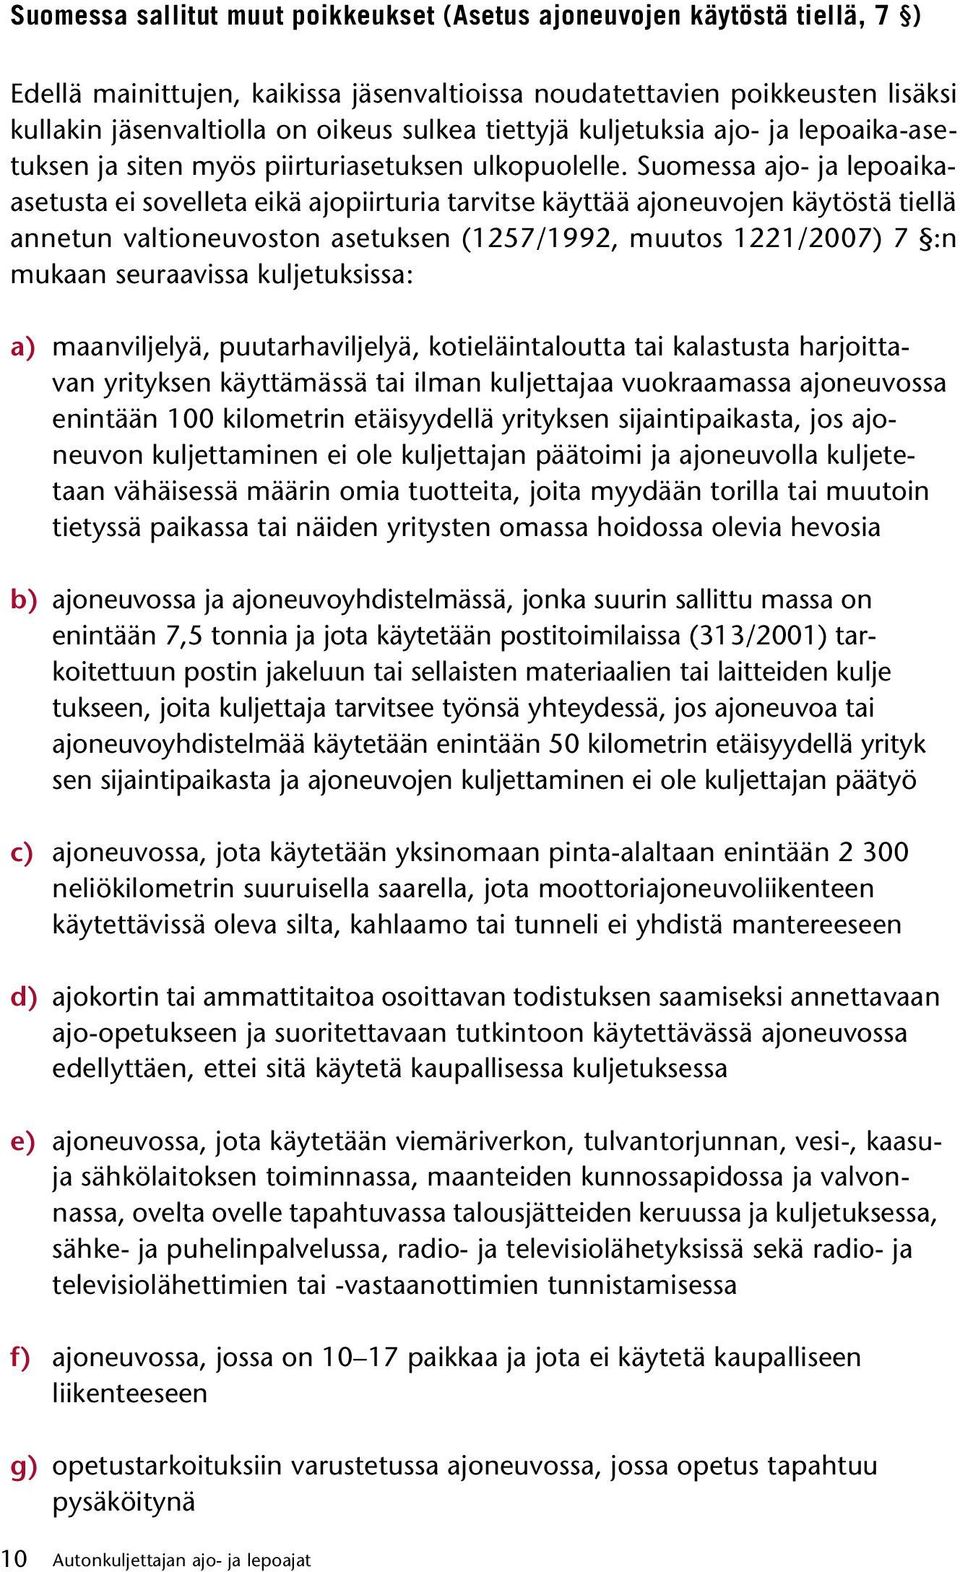 Suomessa ajo- ja lepoaikaasetusta ei sovelleta eikä ajopiirturia tarvitse käyttää ajoneuvojen käytöstä tiellä annetun valtioneuvoston asetuksen (1257/1992, muutos 1221/2007) 7 :n mukaan seuraavissa